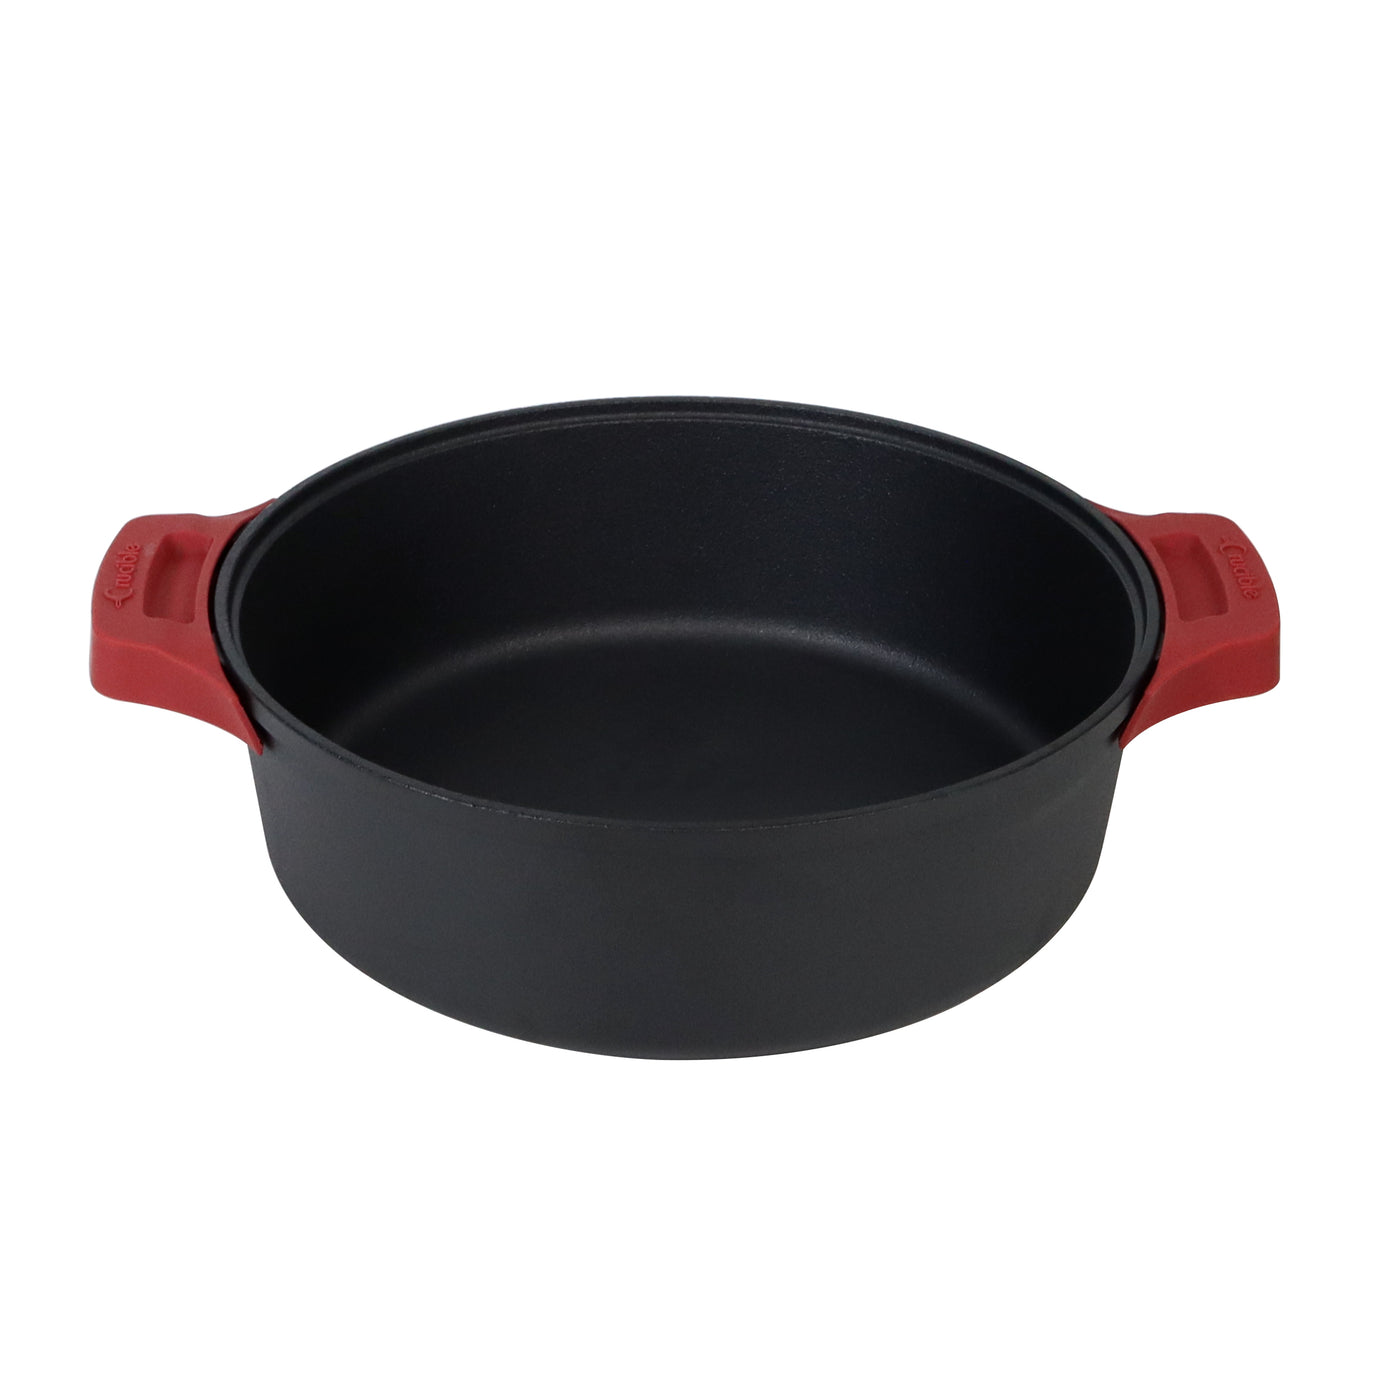 12 英寸铸铁煎锅套装（超深），带双环手柄、煎锅、硅胶隔热垫